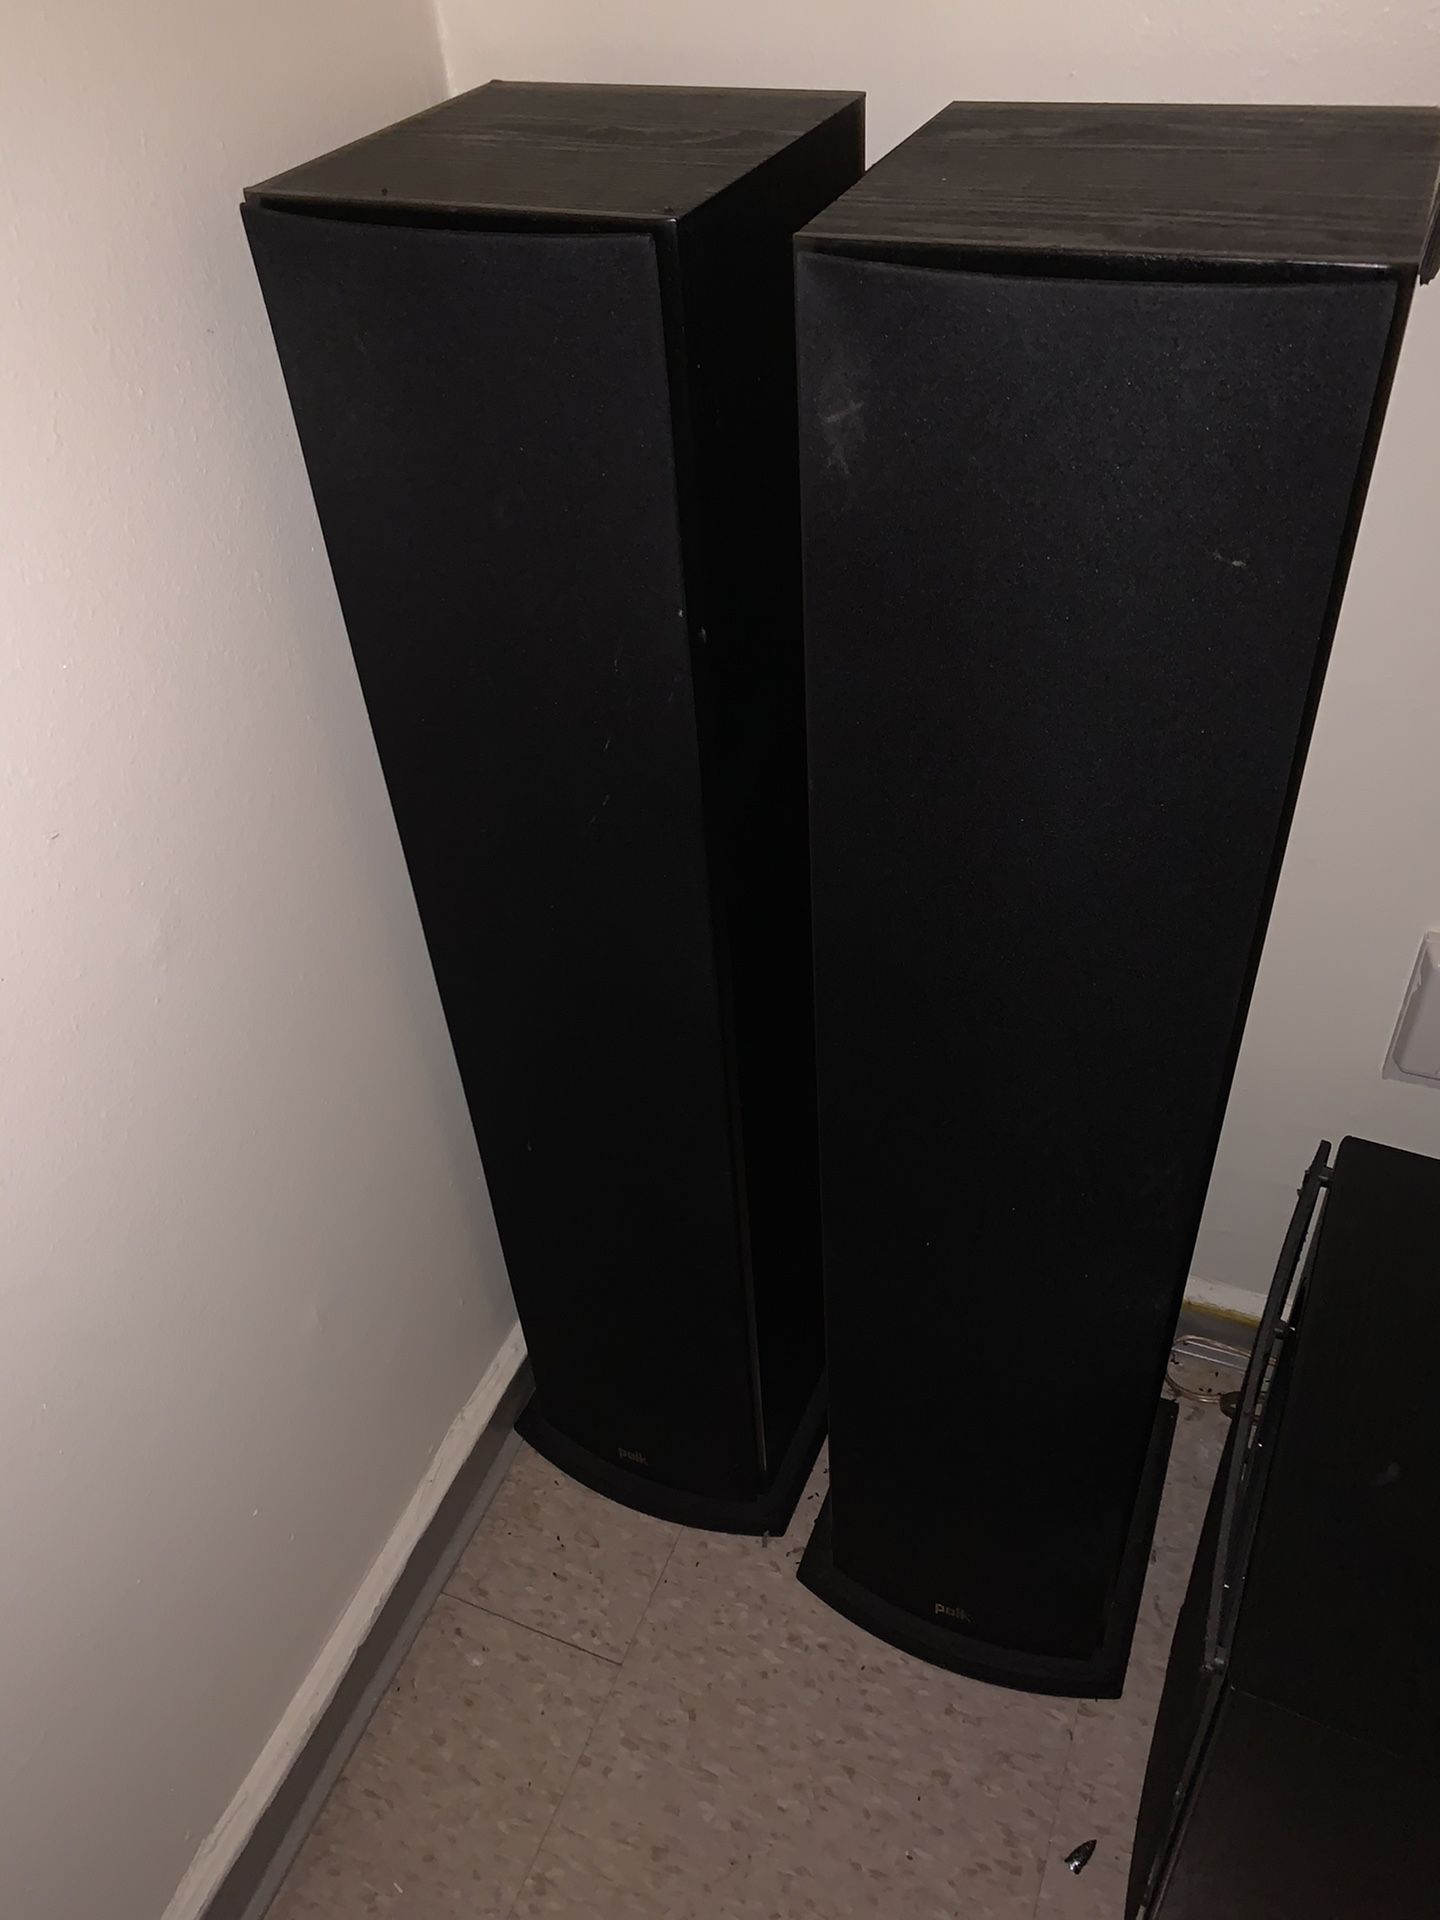 Two Polk speakers